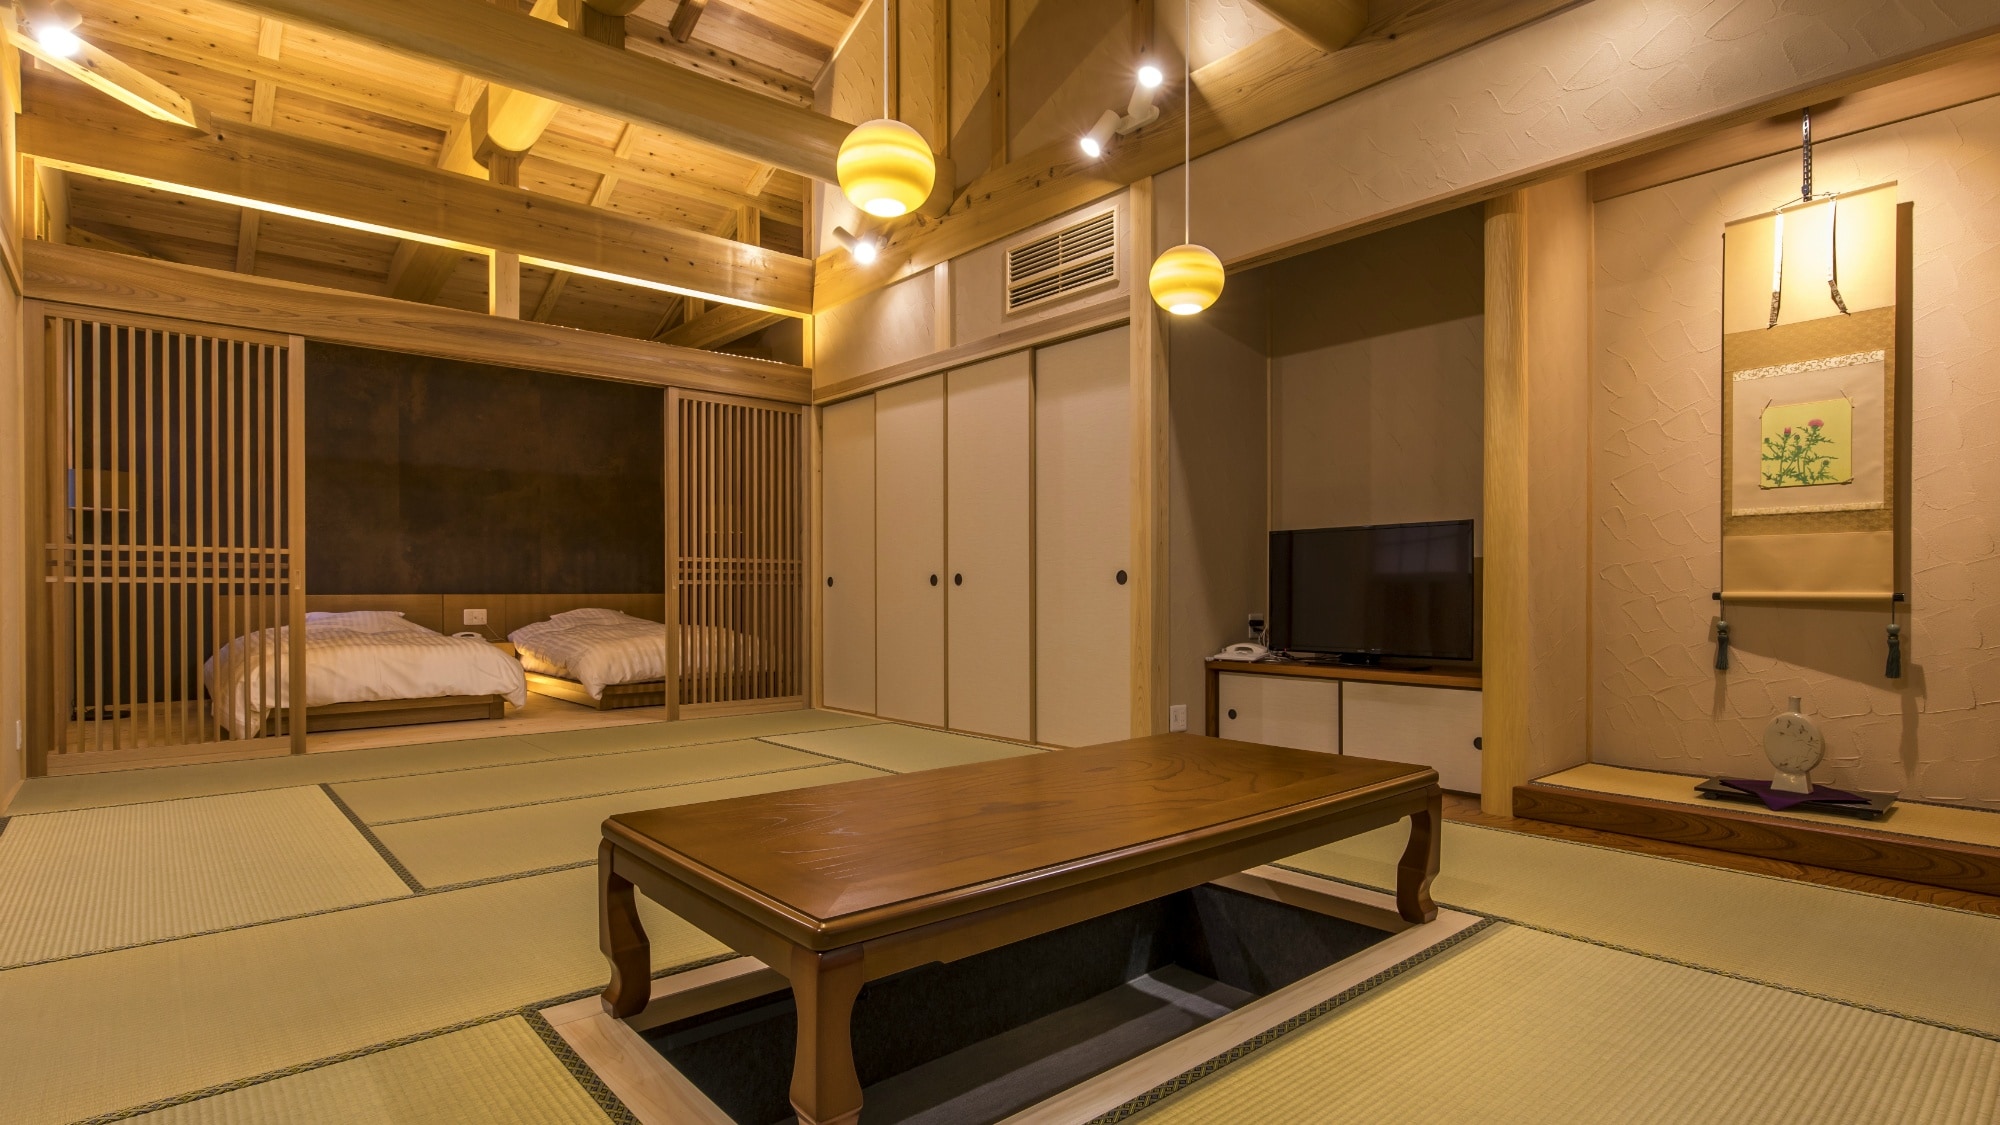 [ห้องญี่ปุ่น-ตะวันตก] ห้องสไตล์ญี่ปุ่นทันสมัยพร้อมห้องสไตล์ญี่ปุ่น 12 เสื่อและห้องนอนกึ่งเตียงคู่